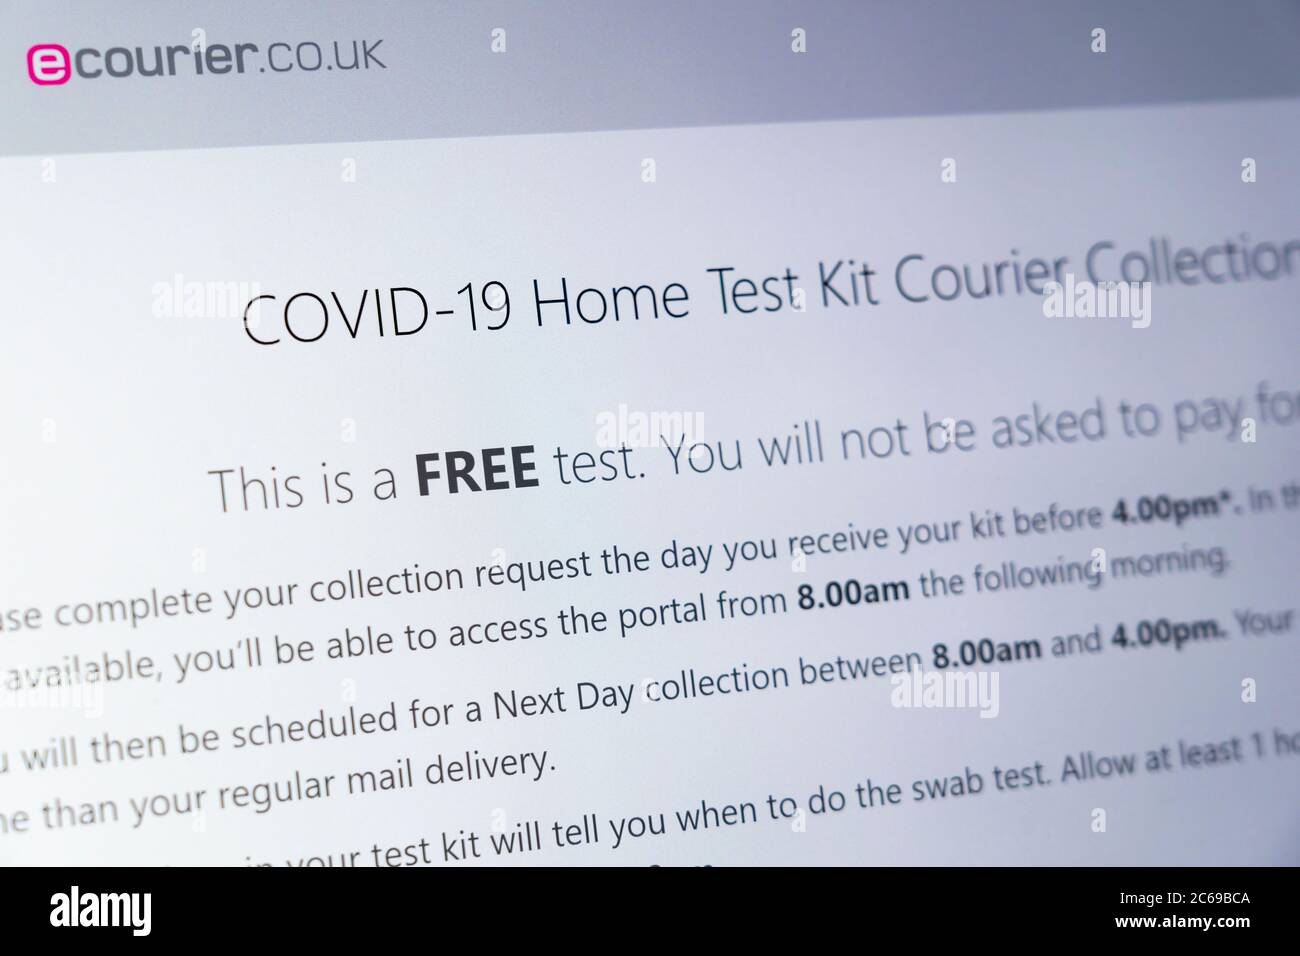 Un'e-mail sullo schermo di un computer che mostra informazioni su un servizio di ritiro corriere del kit di test per la casa Covid-19 da parte di ecourier.co.uk, Regno Unito Foto Stock